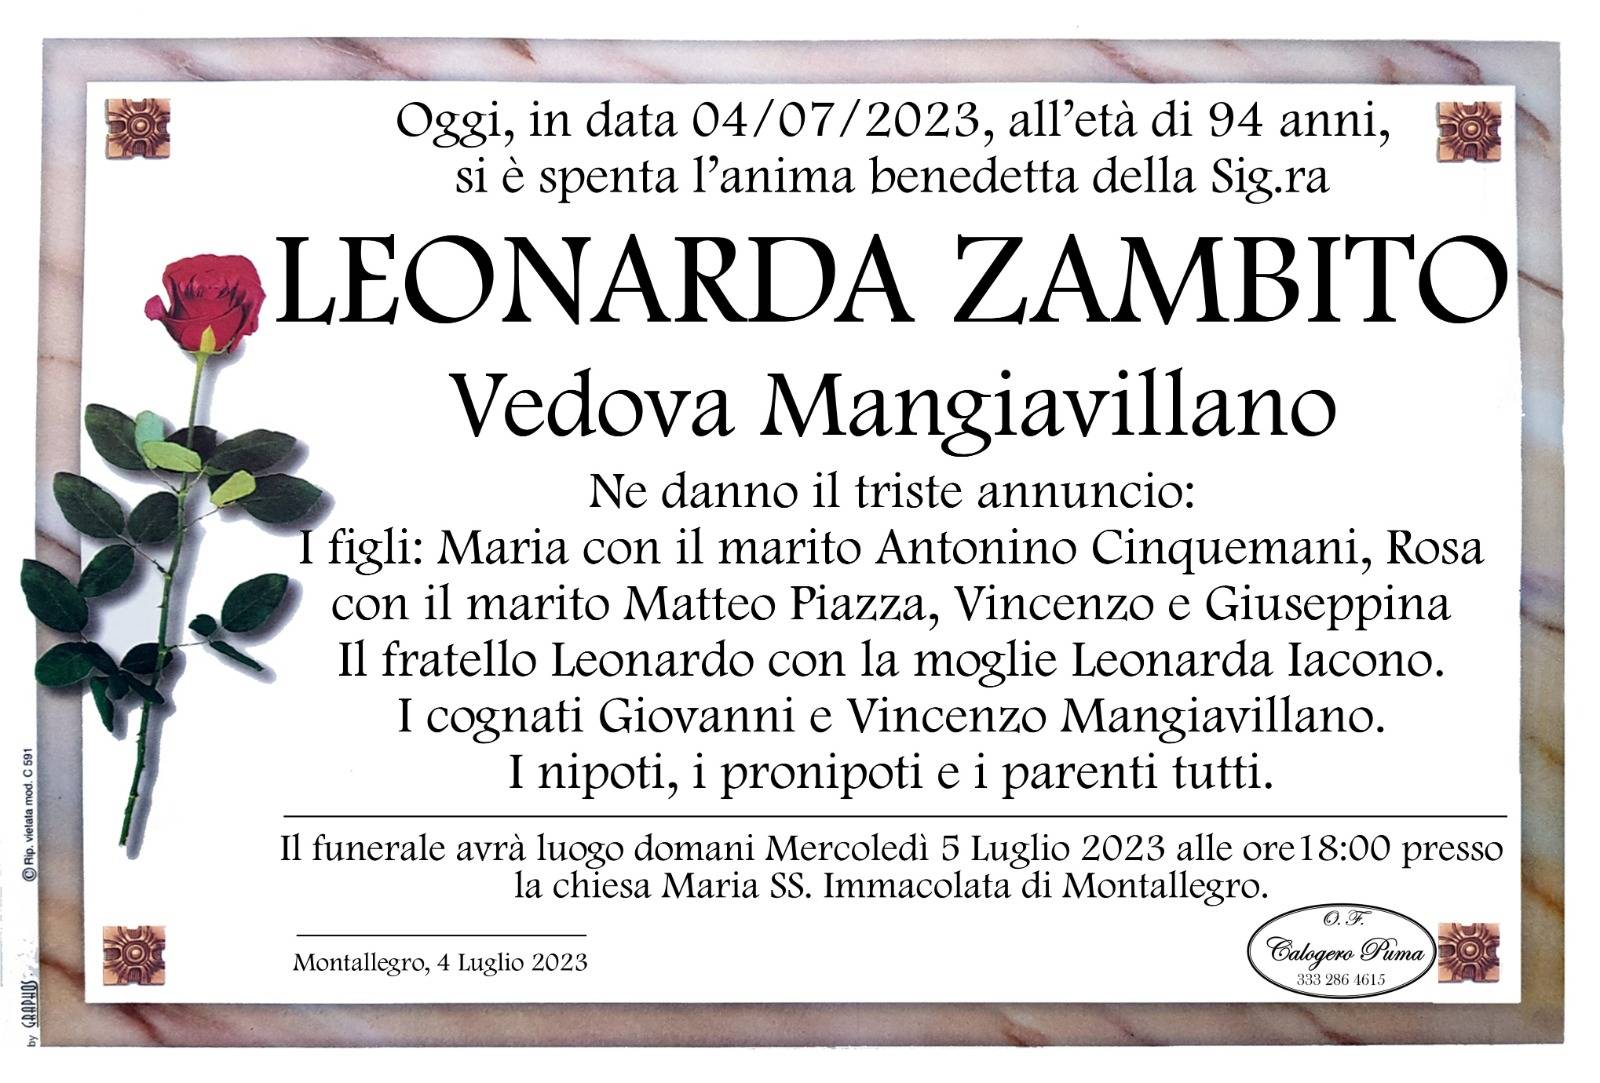 Leonarda Zambito